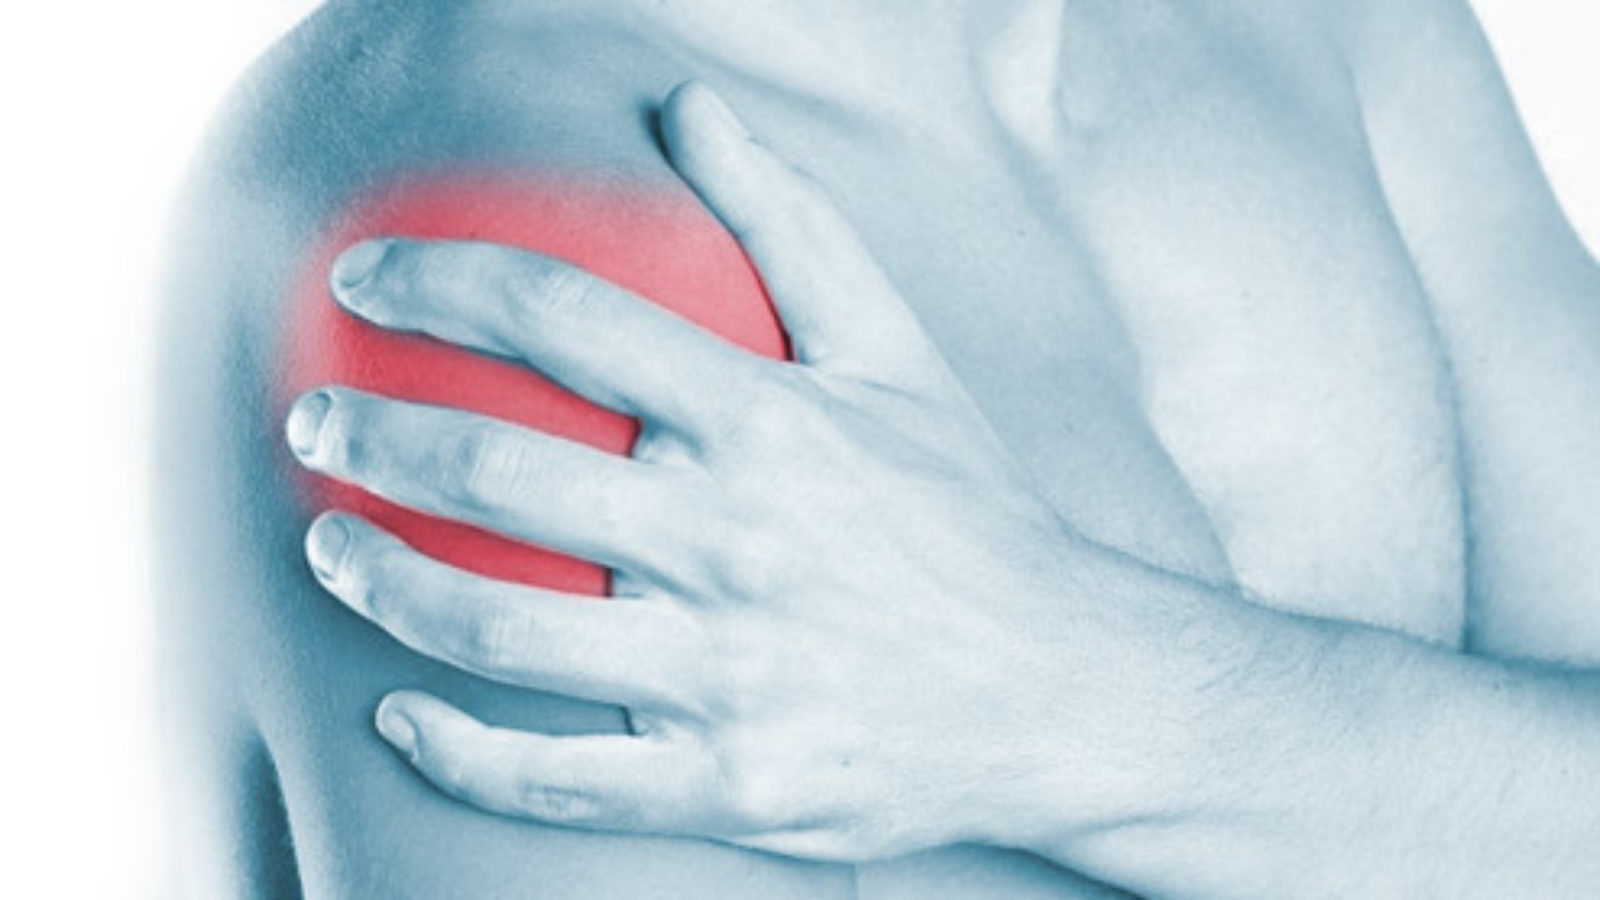 La lesione della cuffia dei rotatori è una lesione che provoca forte dolore alla spalla, arrivando ad impedirne il movimento.